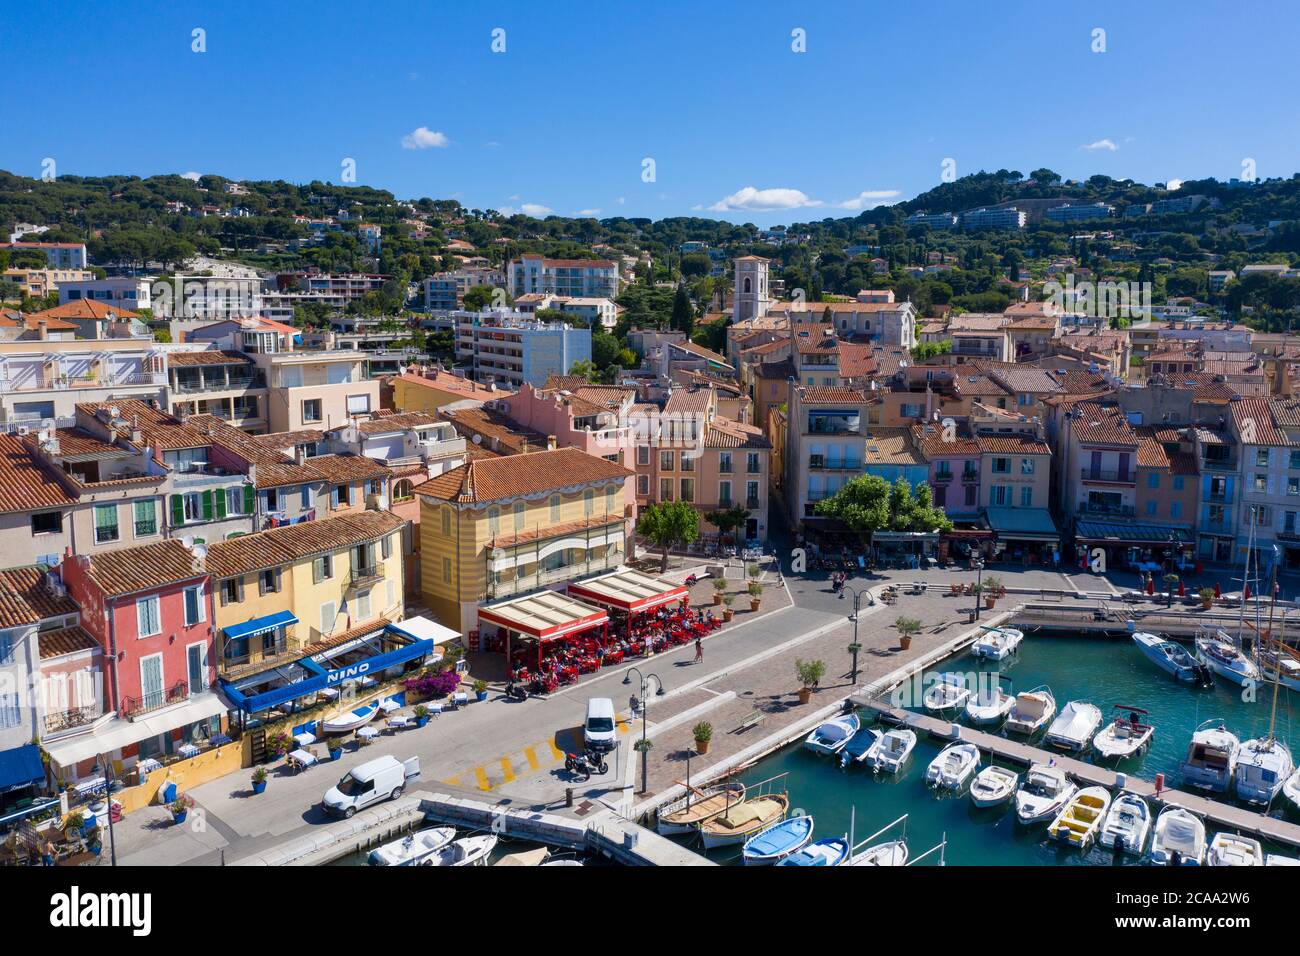 Vista aérea de Cassis, un pueblo de pescadores situado cerca de Marsella Foto de stock